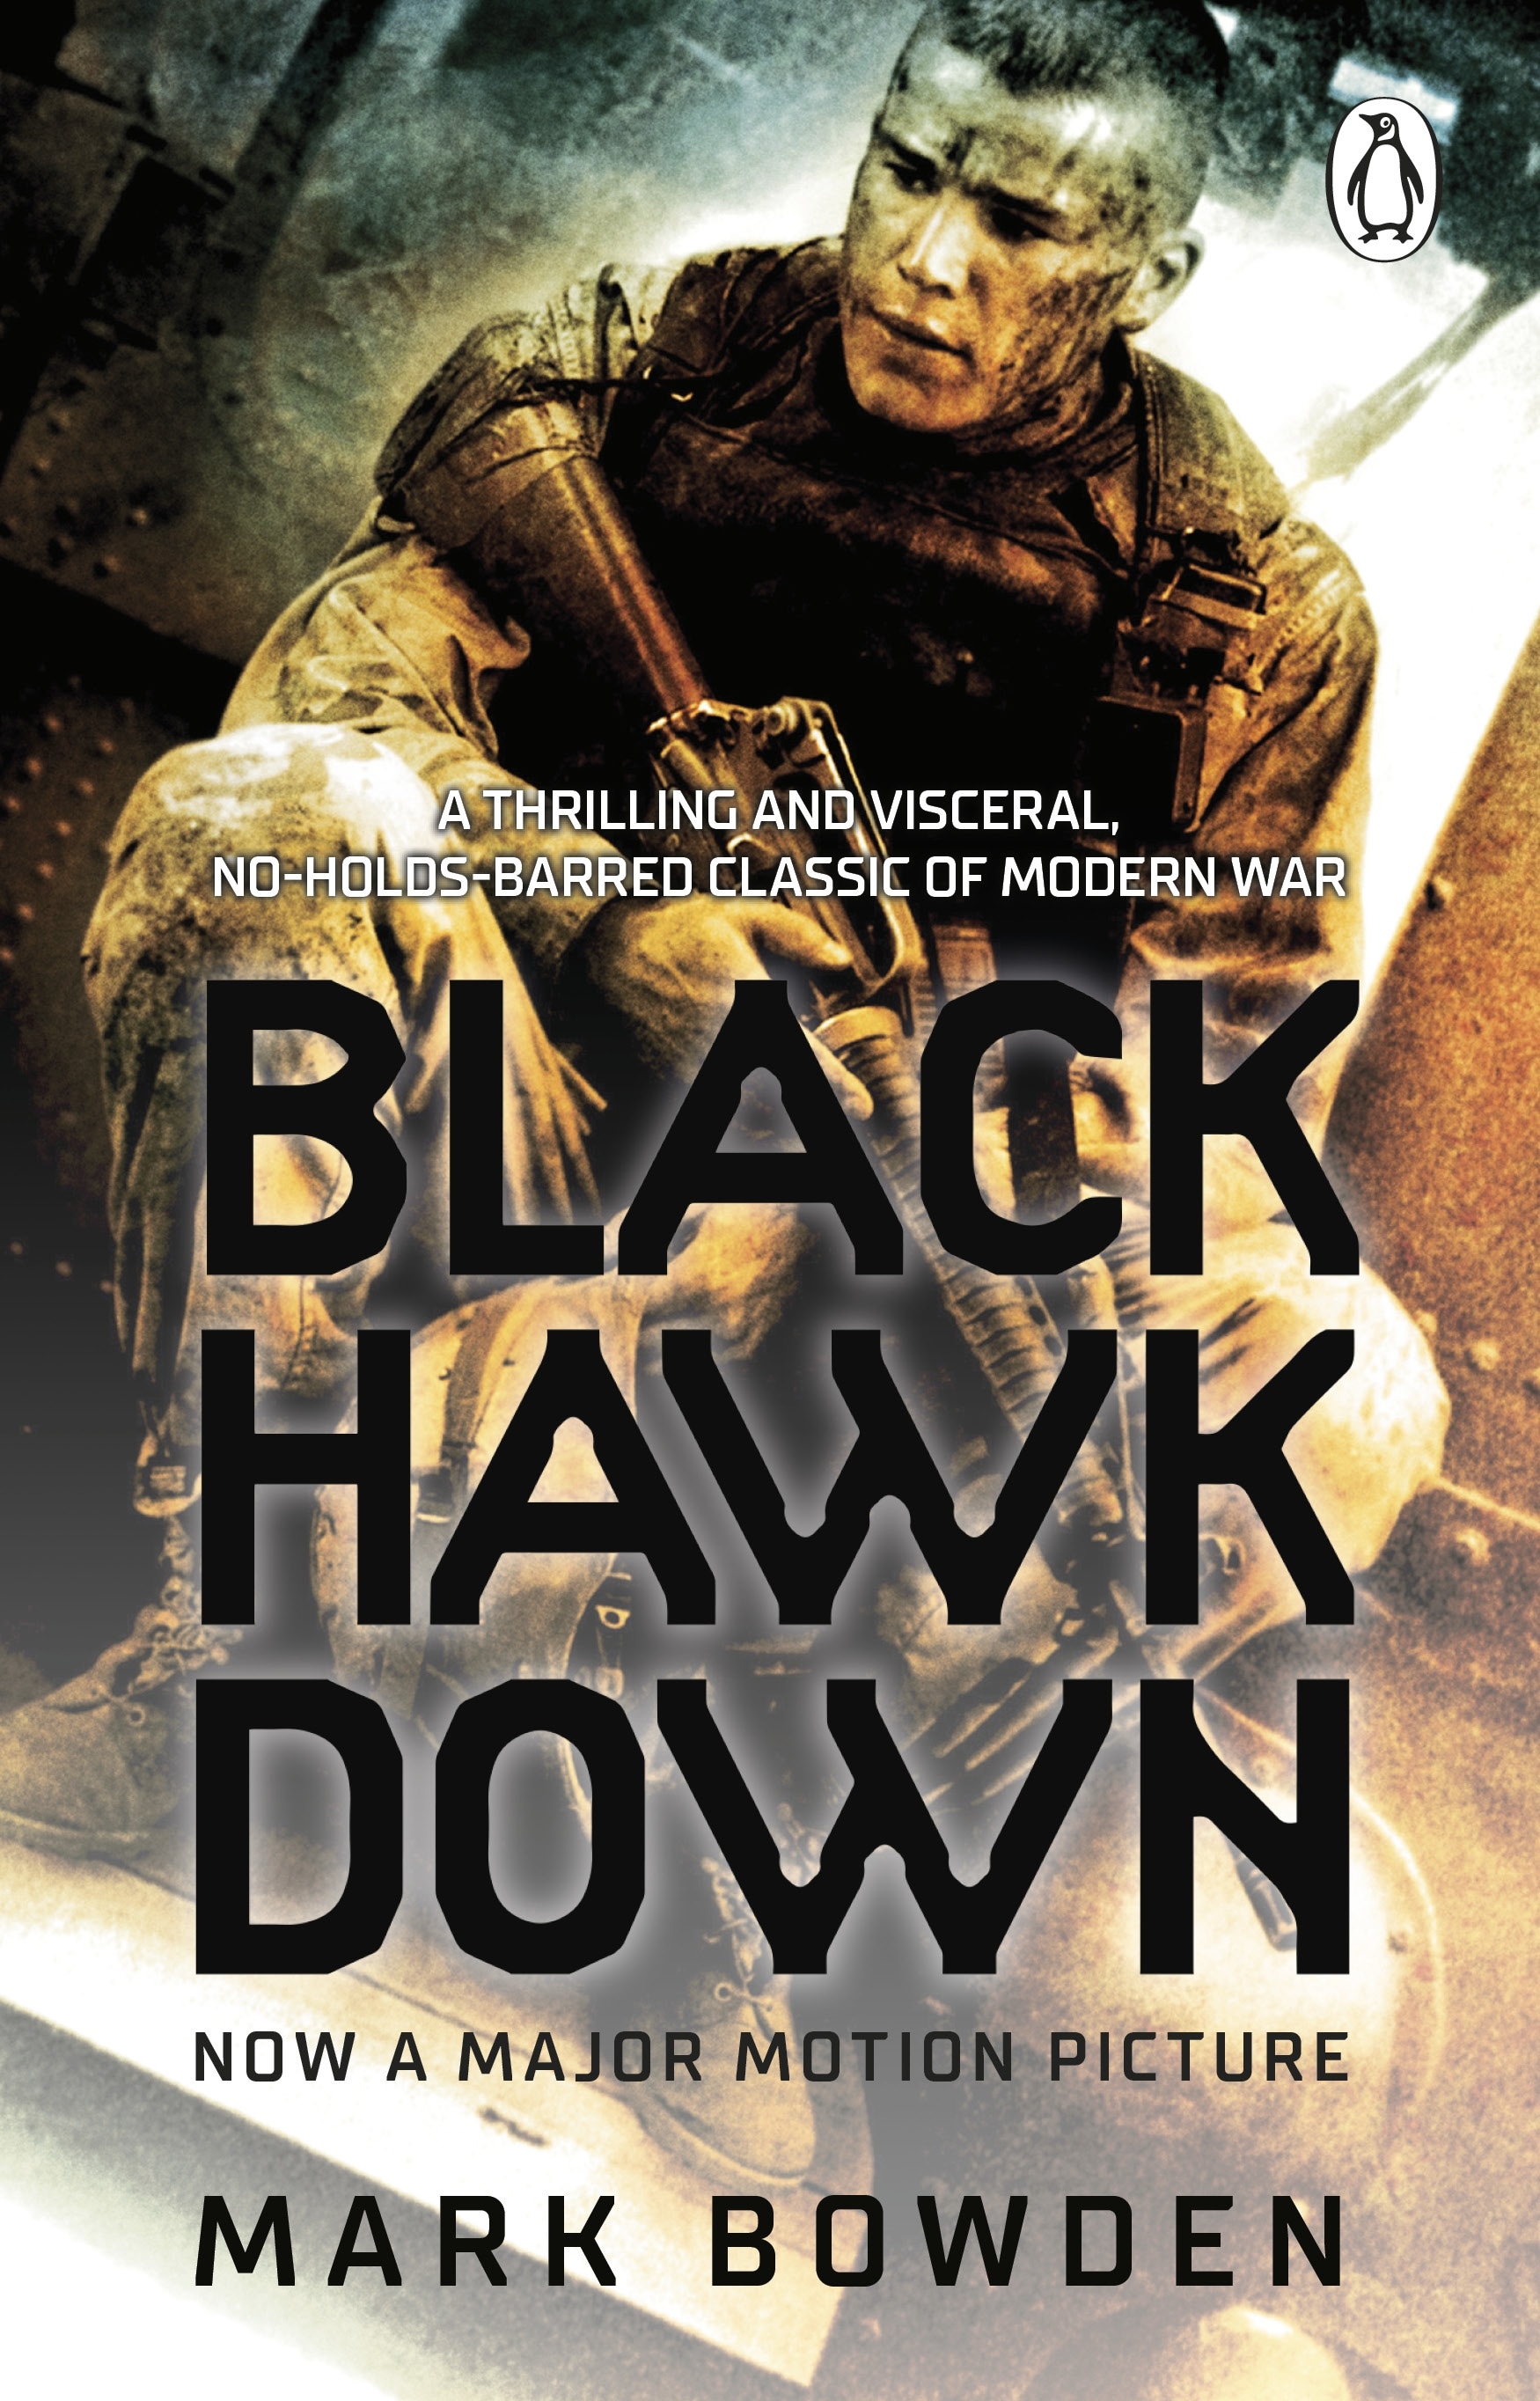 Book “Black Hawk Down” by Mark Bowden — July 29, 2021